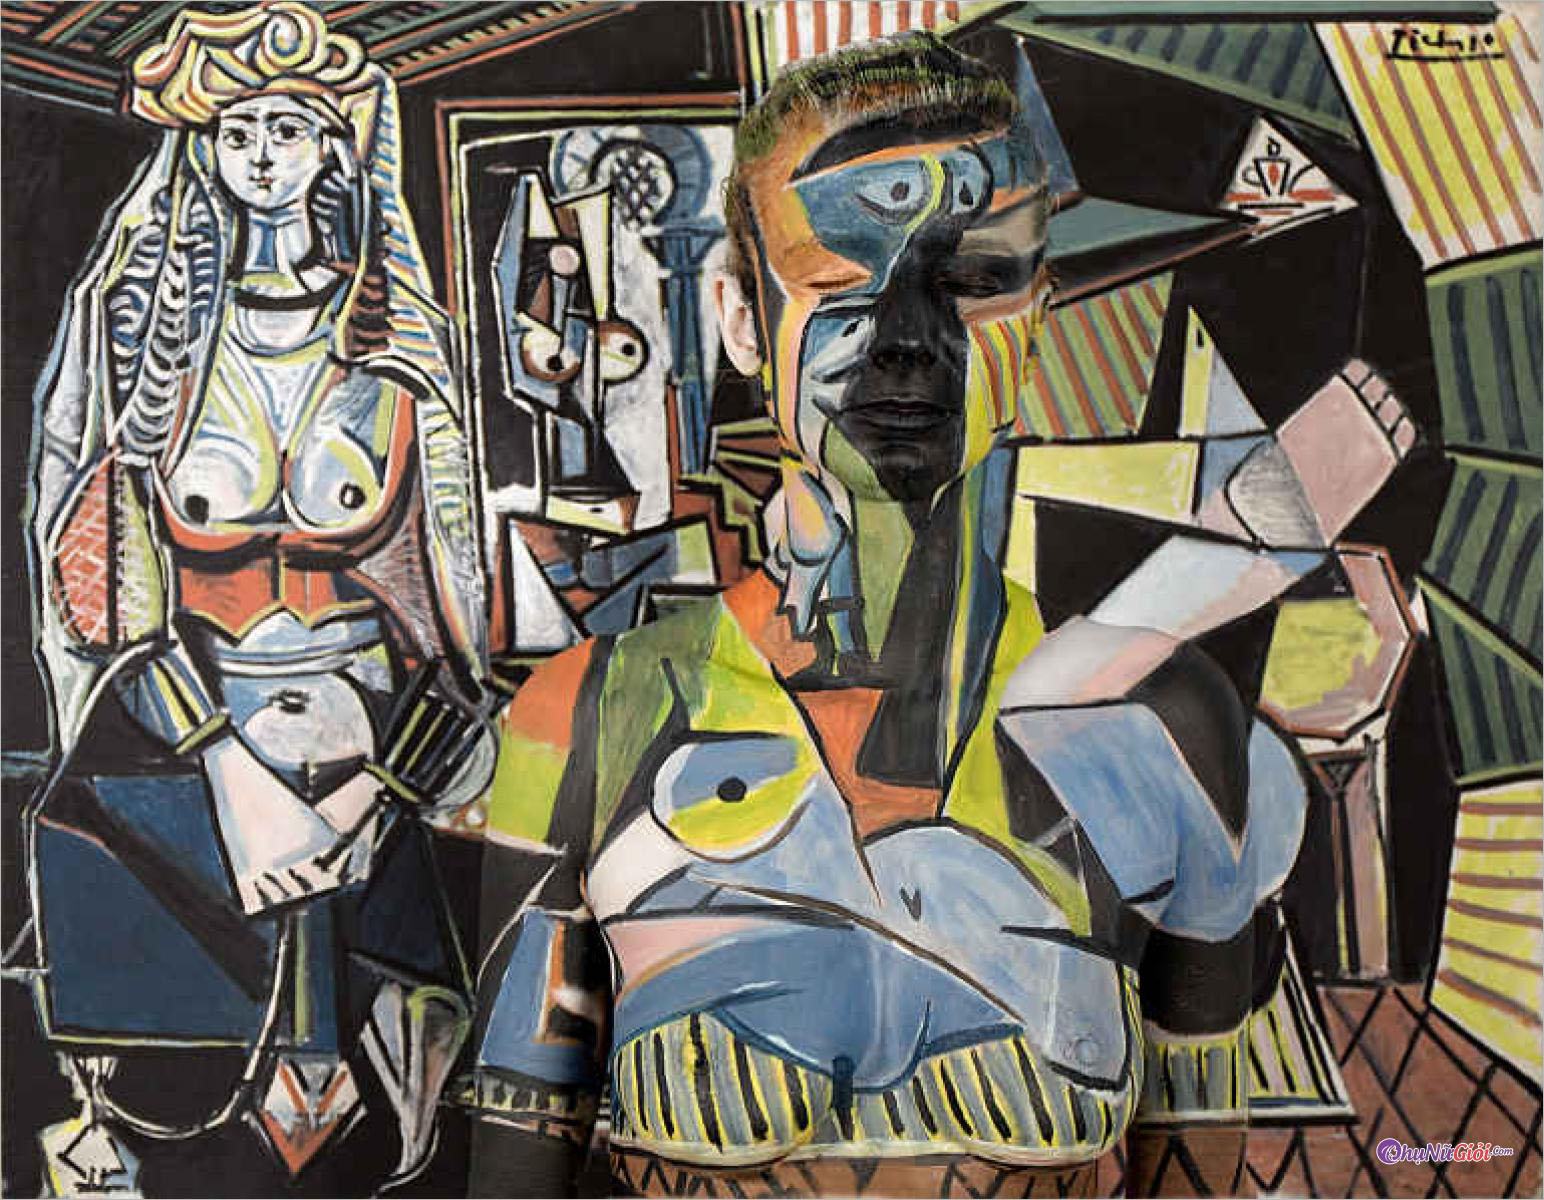 Tranh vẽ Picasso trìu tượng, khó hiểu và độc nhất